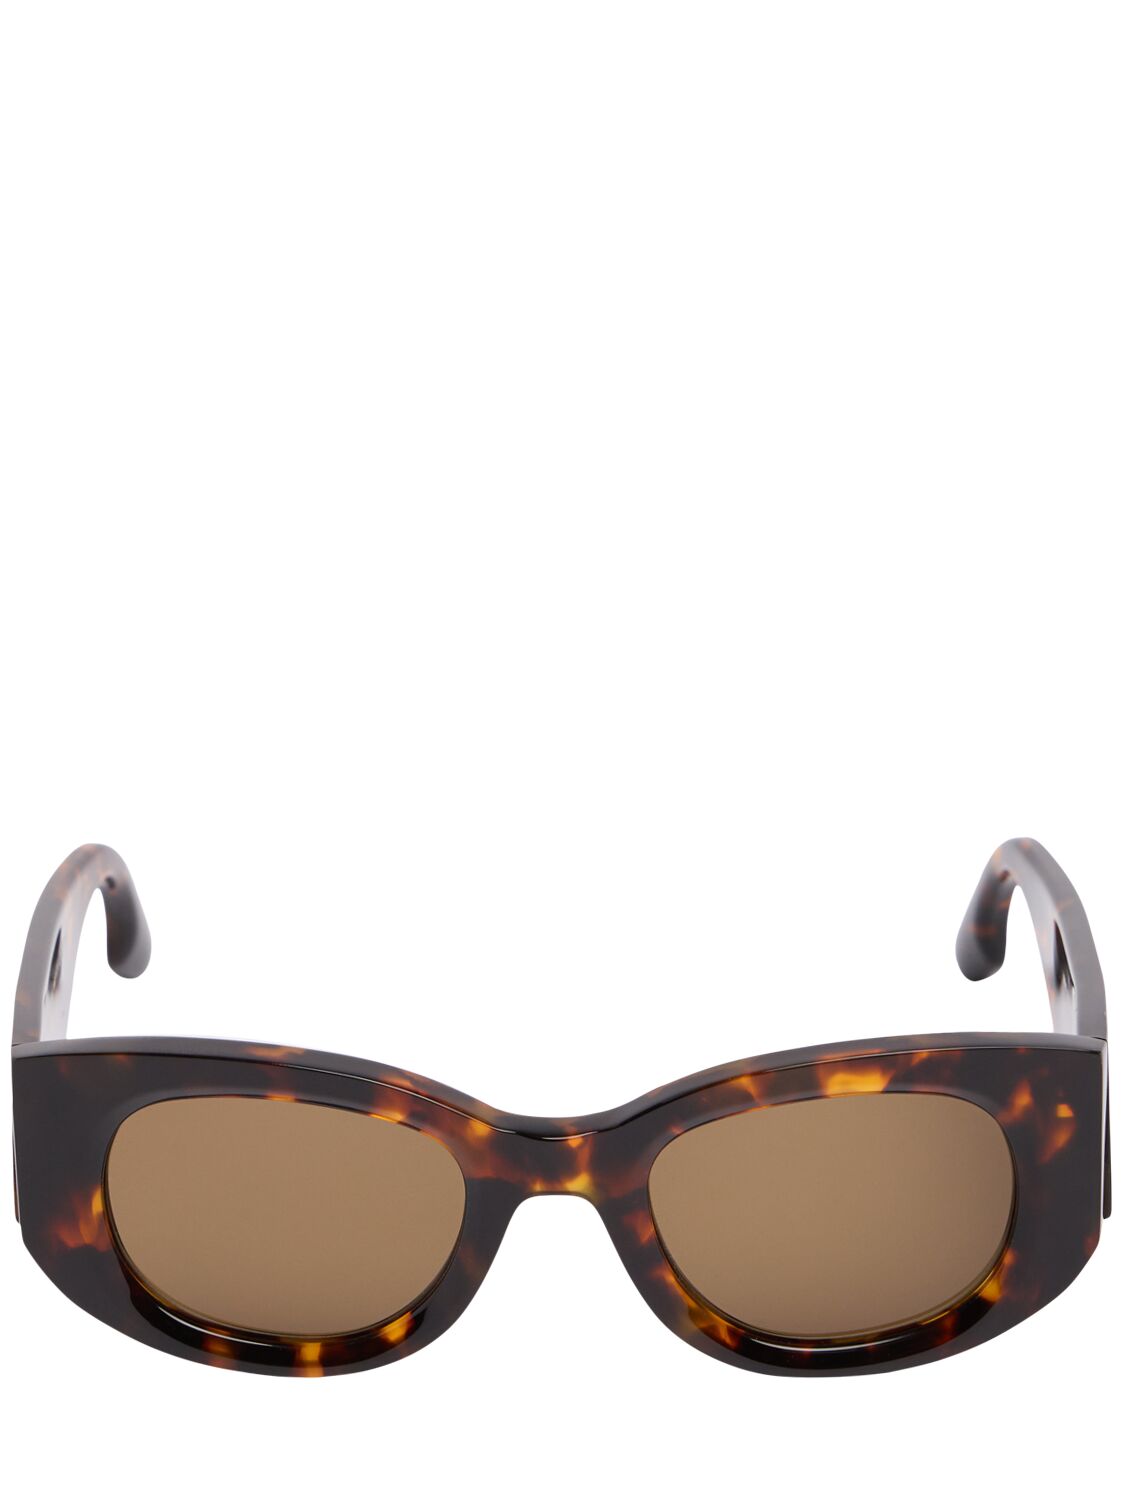 Victoria Beckham Vb Monogram Acetate Sunglasses In Brown